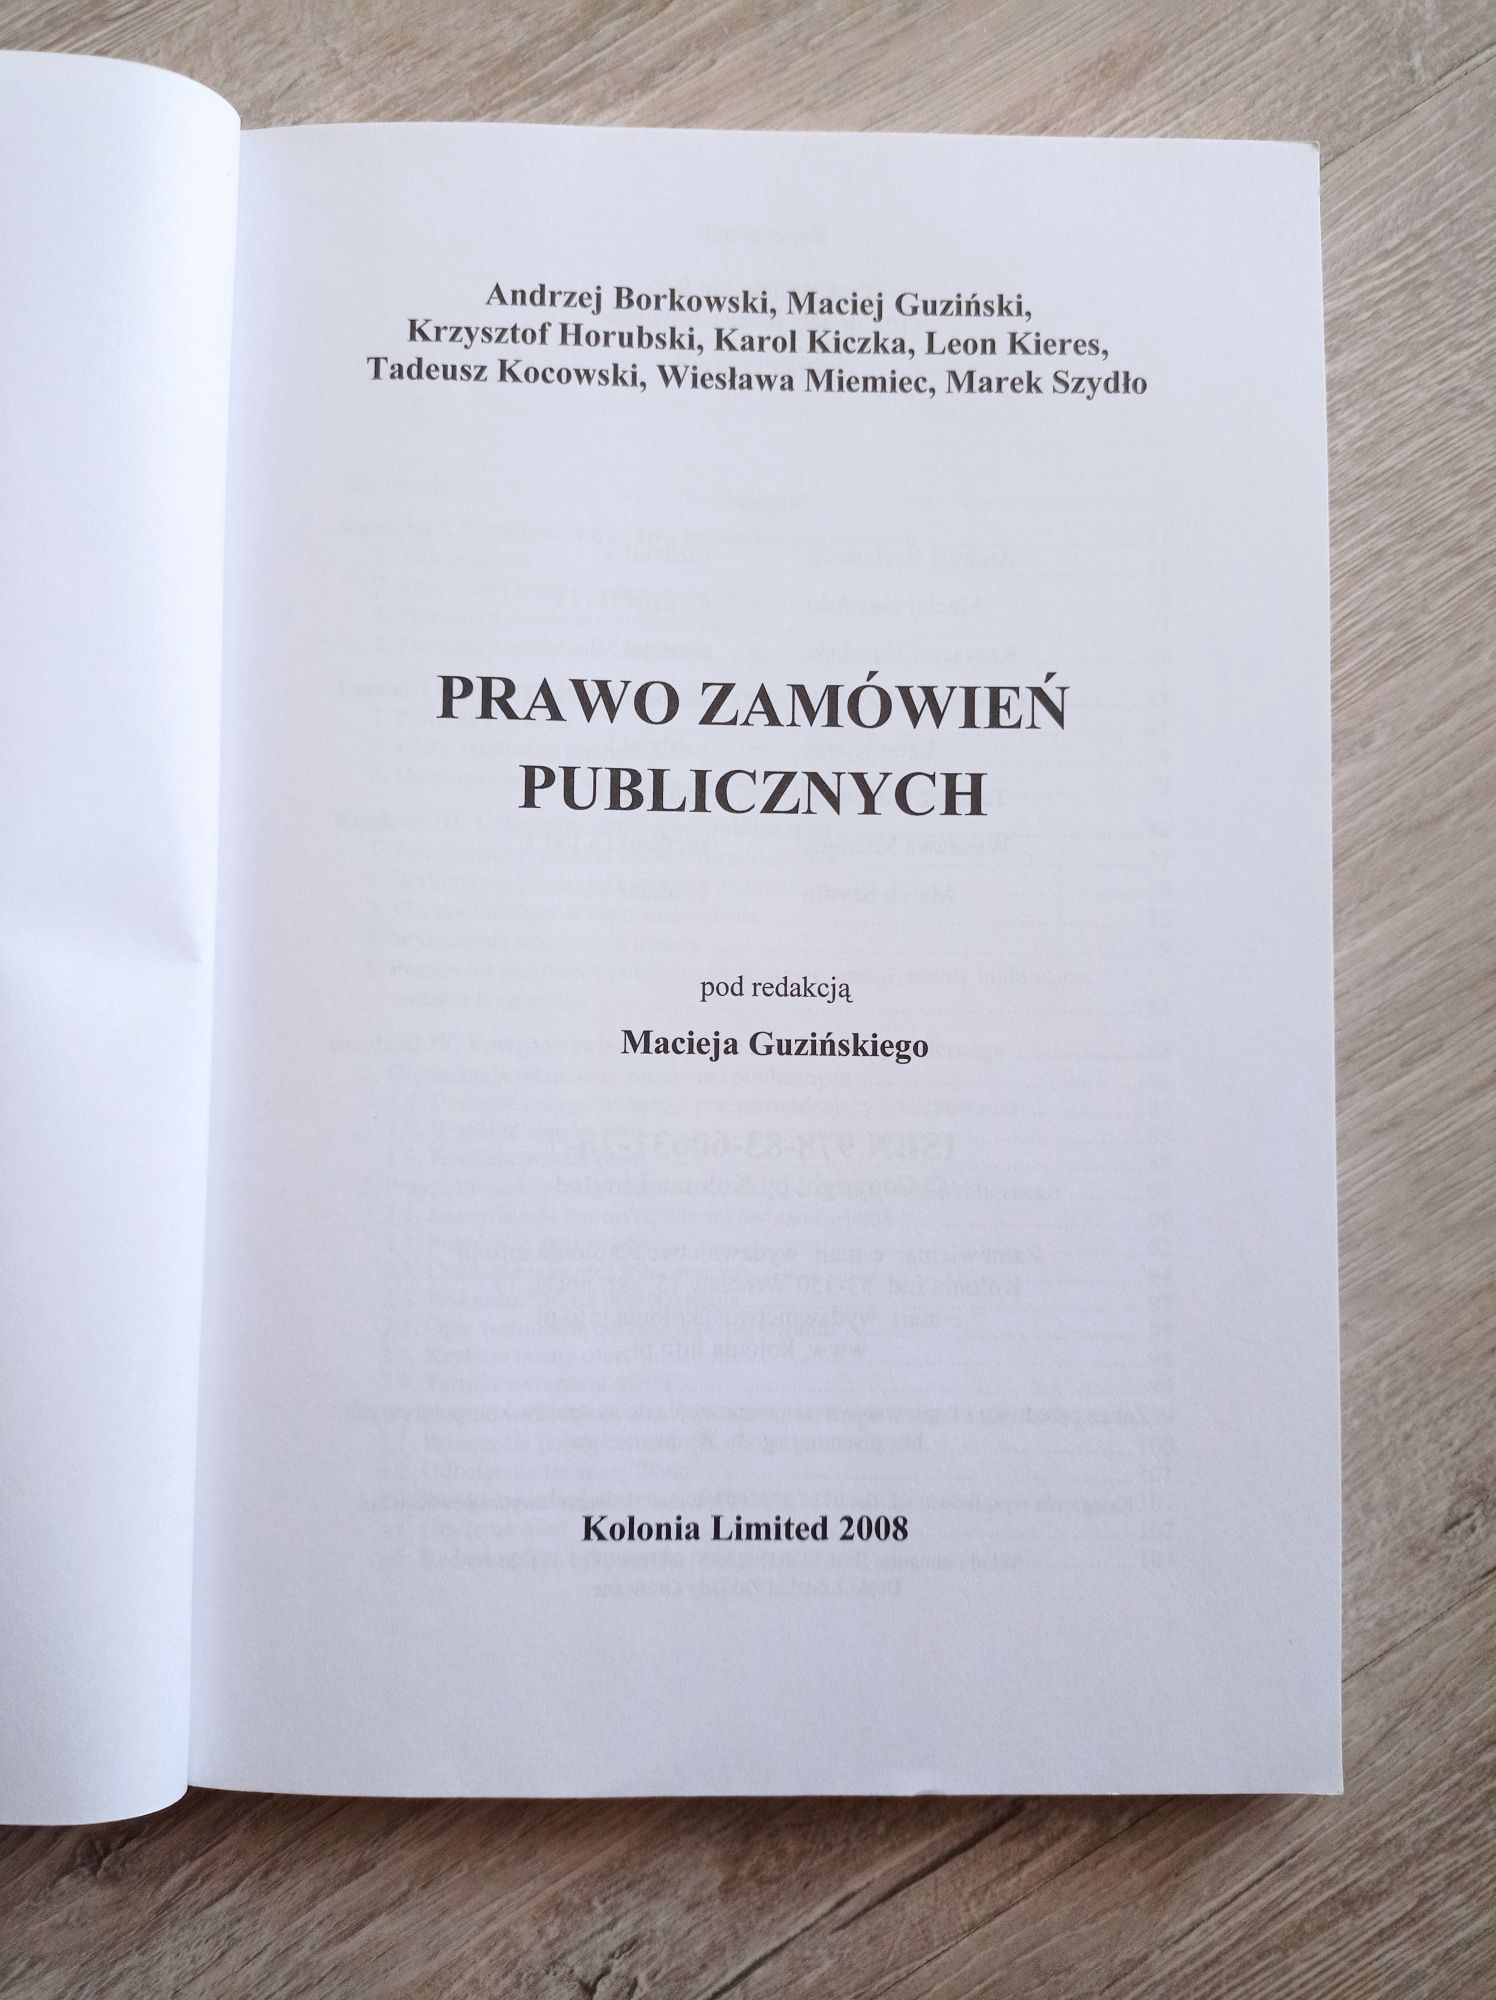 Prawo zamówień publicznych. Andrzej Borkowski